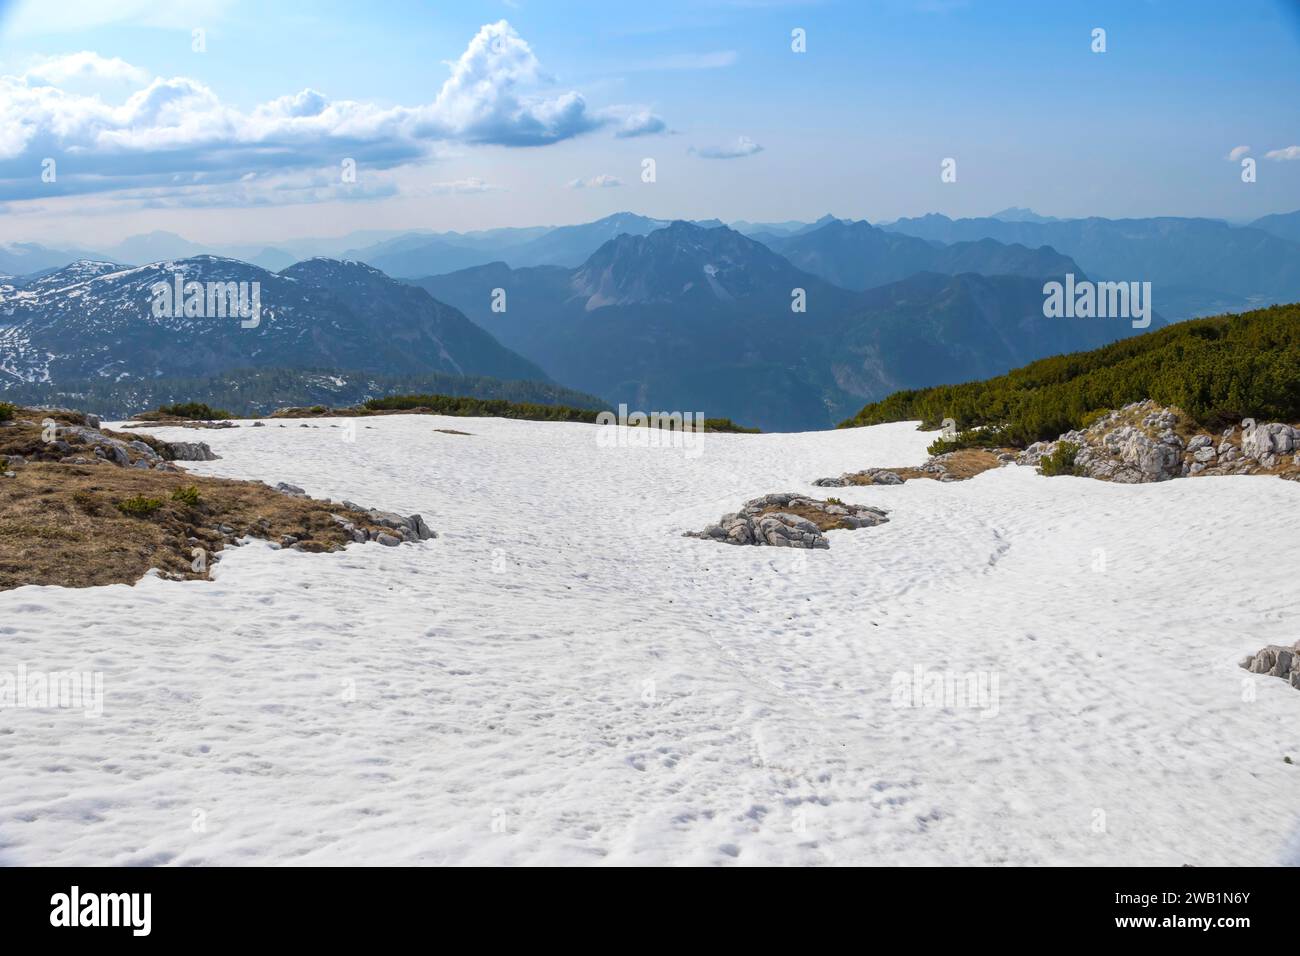 Incredibile panorama delle montagne da una piattaforma di osservazione a 5 dita a forma di mano con cinque dita sul monte Krippenstein nelle montagne Dachstein Foto Stock